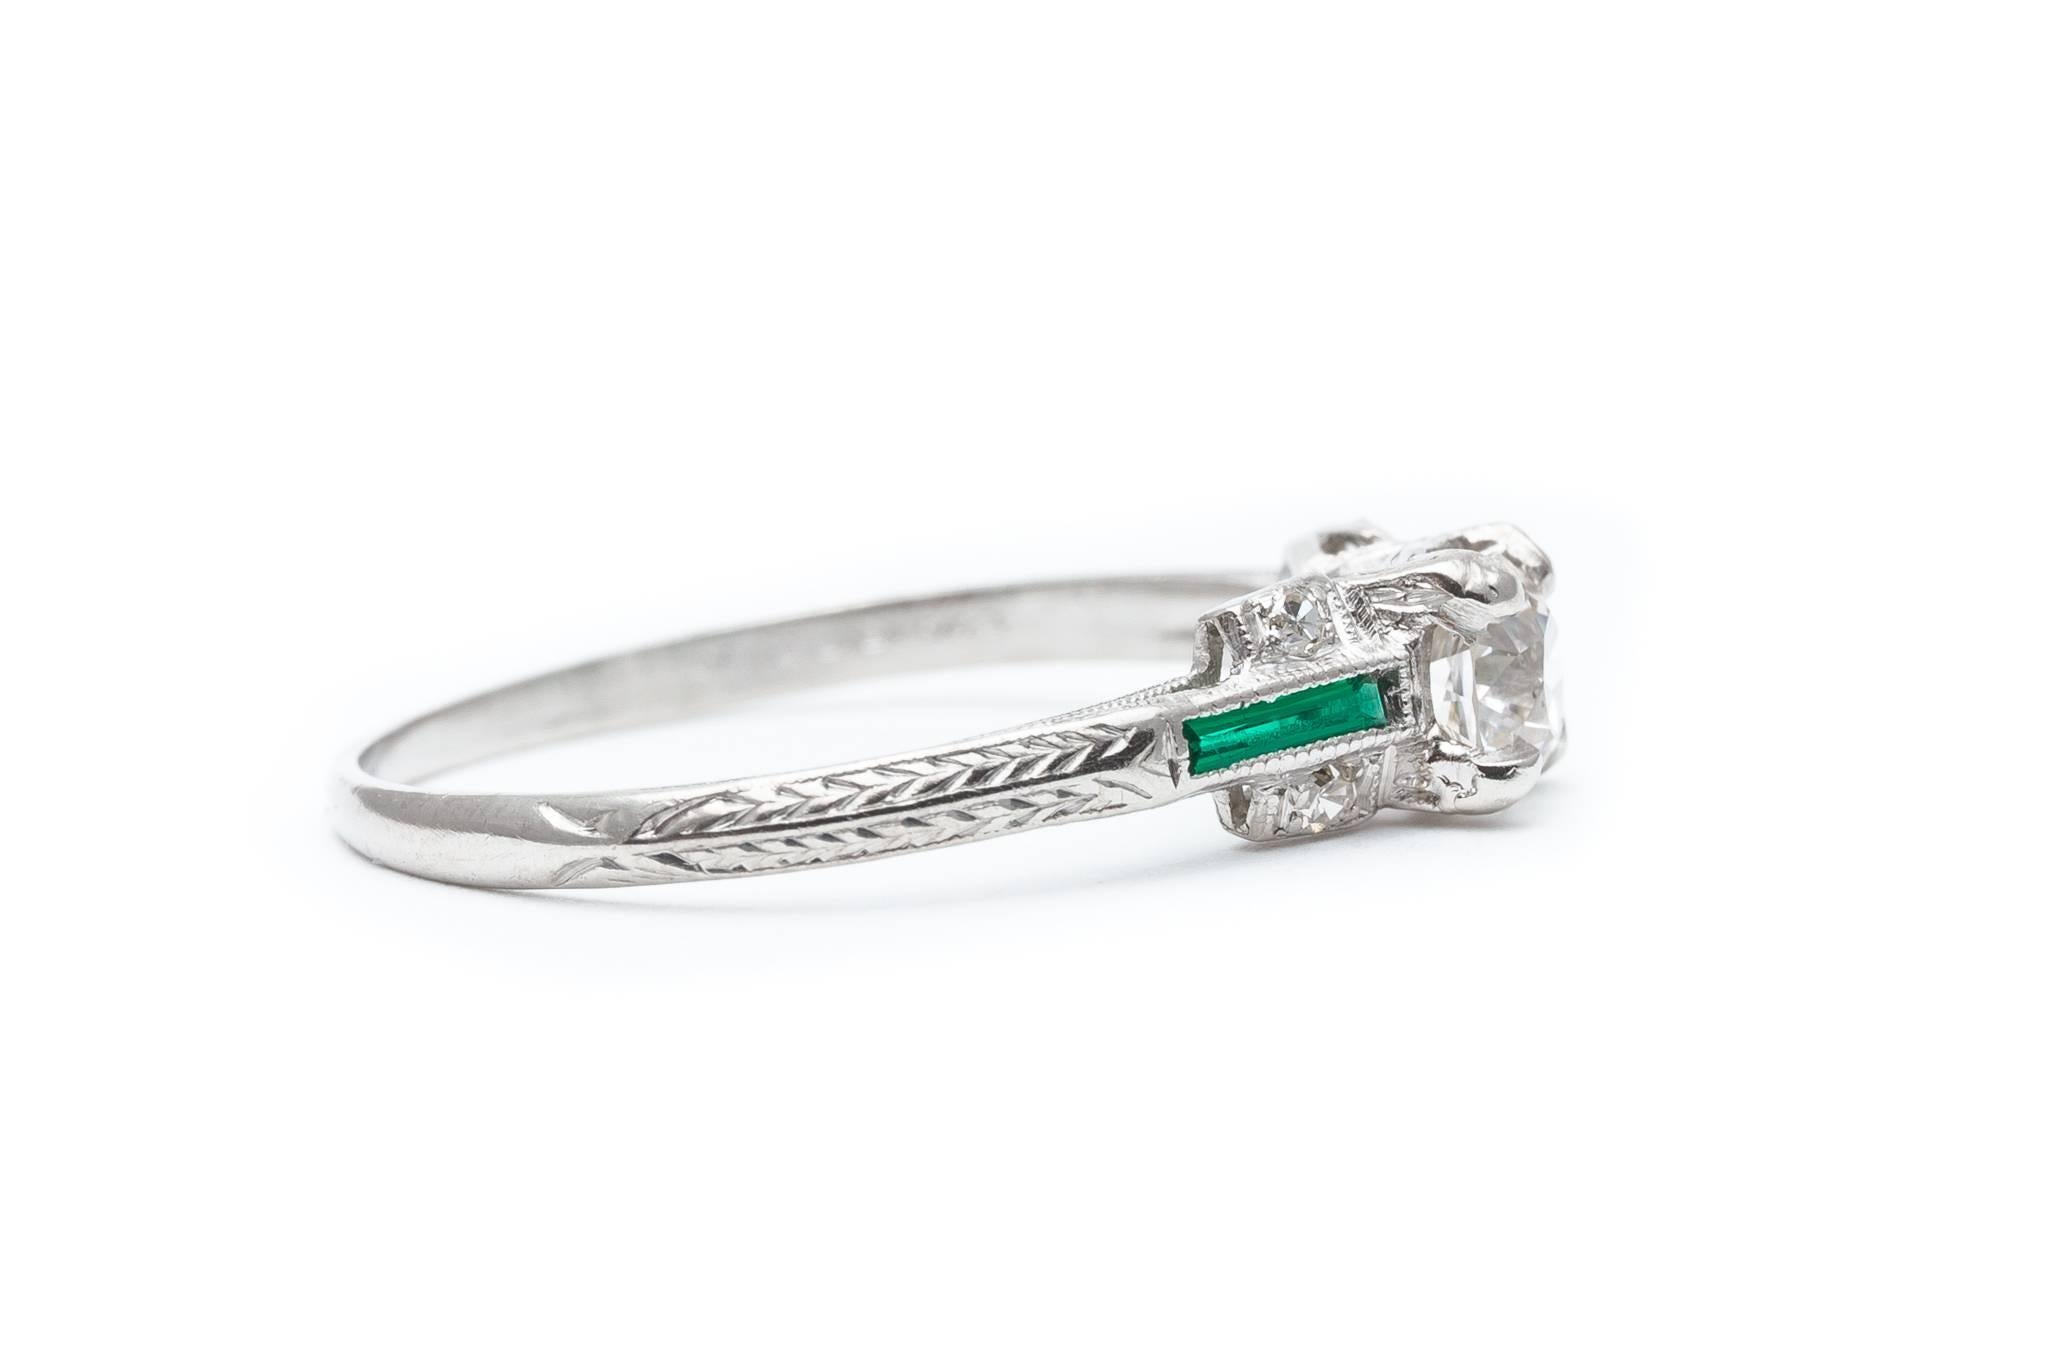 Women's Art Deco Period 0.62 Carat Diamond, Emerald Engagement Ring in Platinum For Sale